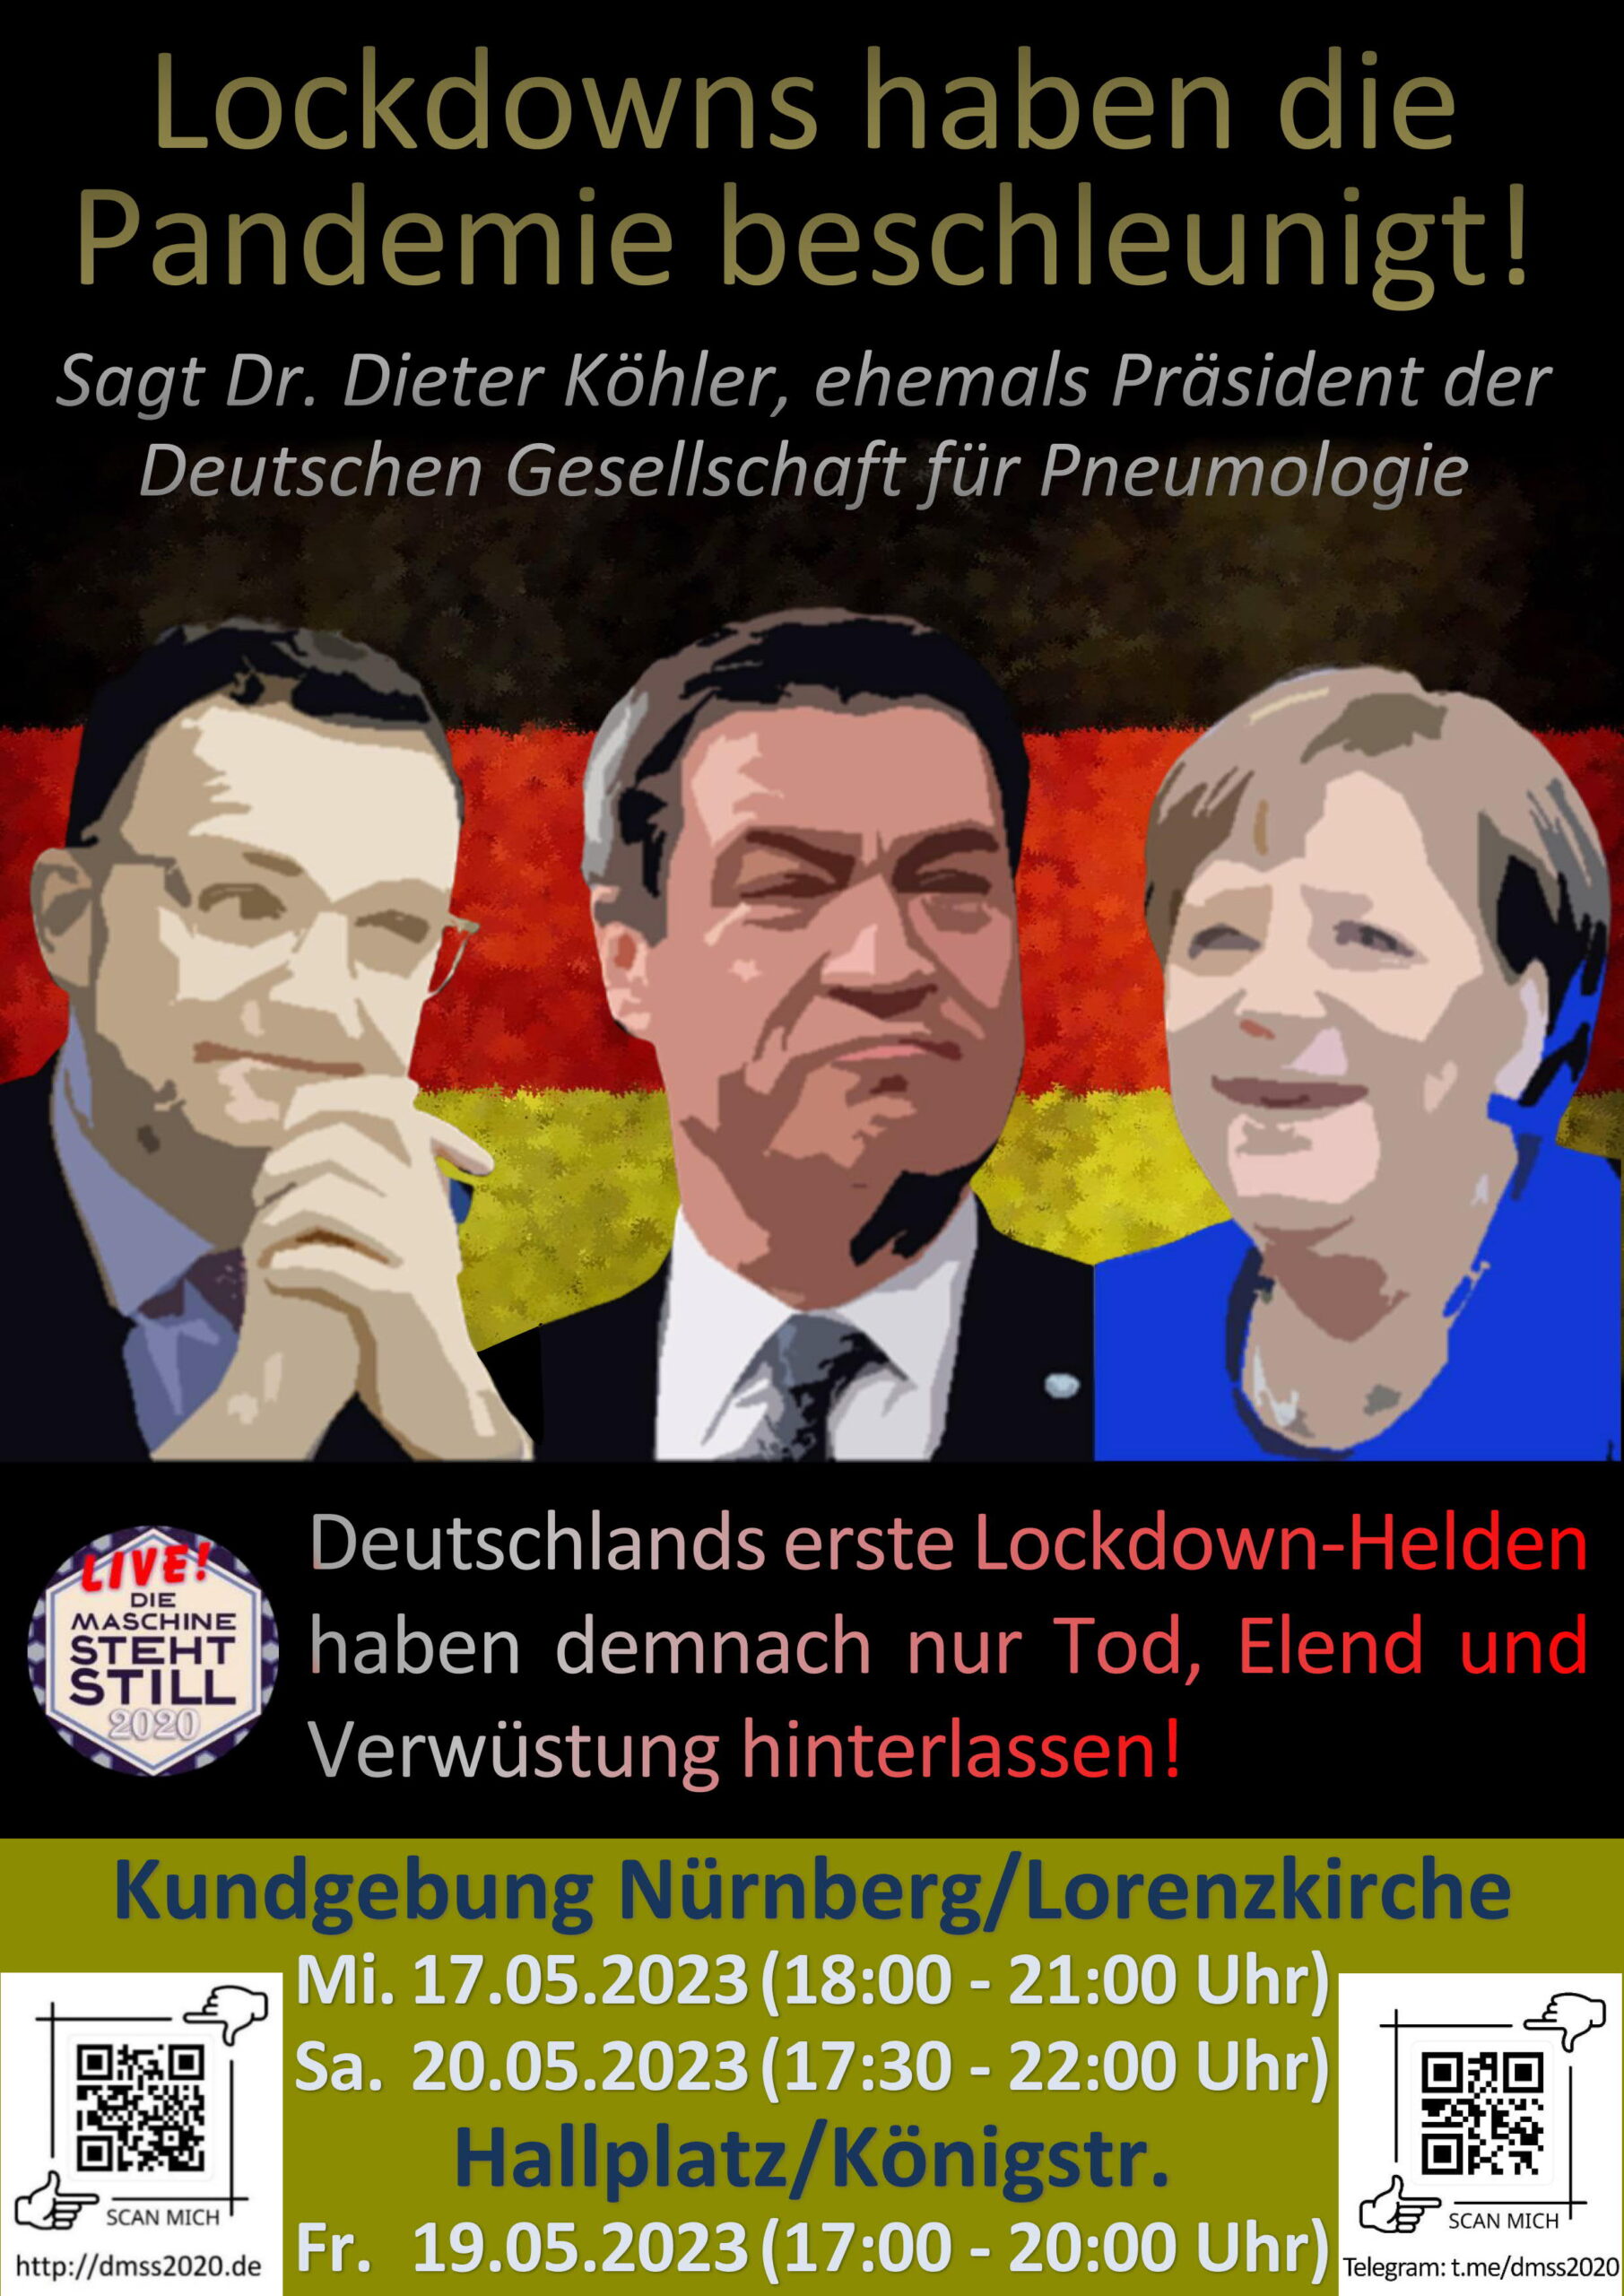 Lockdowns haben die Pandemie beschleunigt! Sagt Dr. Dieter Köhler, ehemals Präsident der Deutschen Gesellschaft für Pneumologie Deutschlands erste Lockdown-Helden haben demnach nur Tod, Elend und Verwüstung hinterlassen!